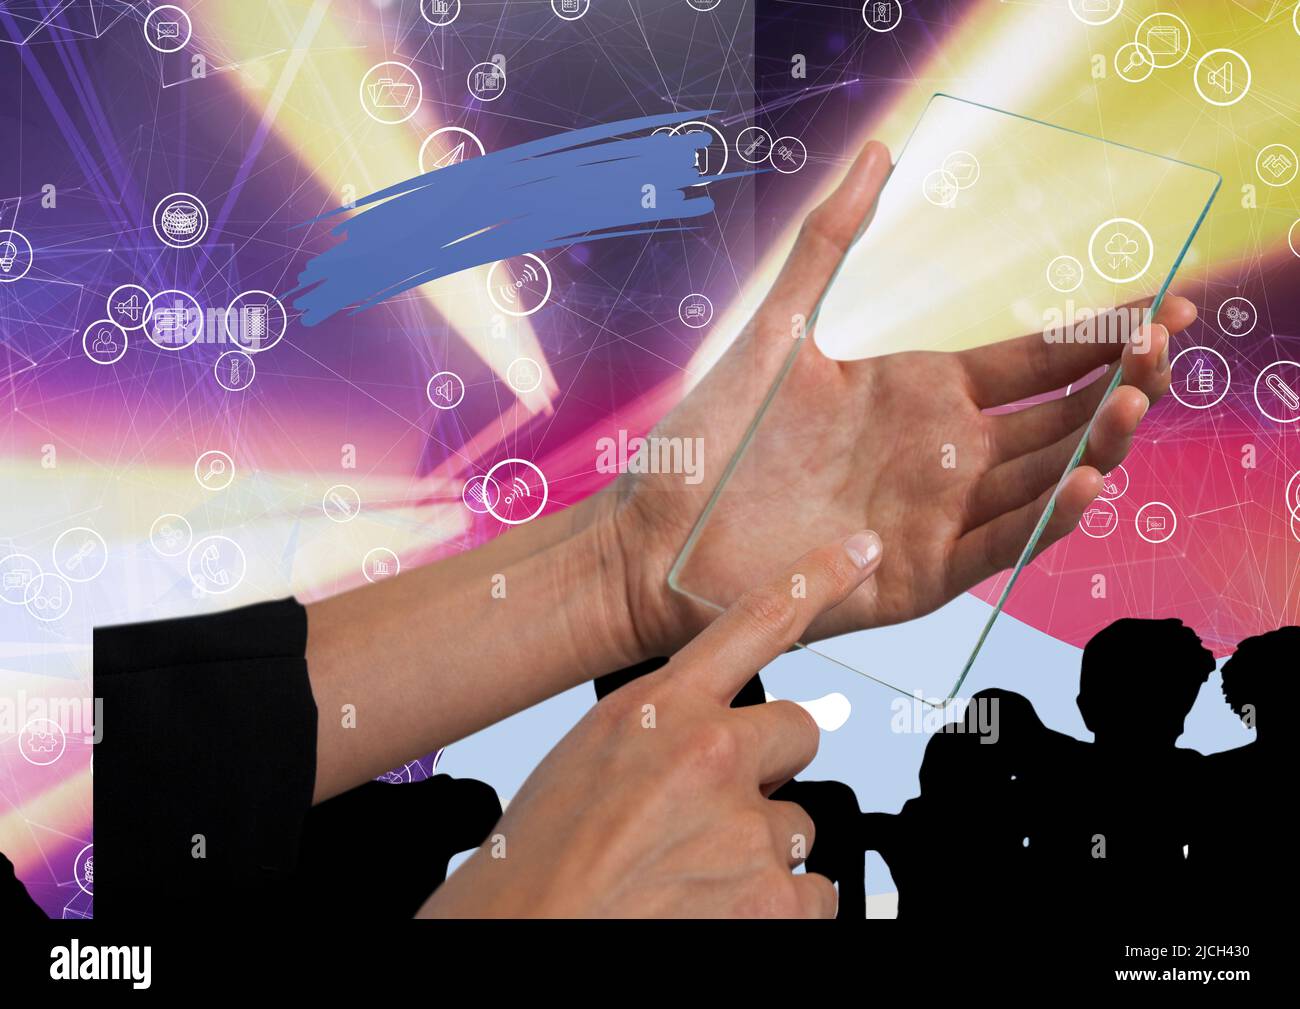 Mano usando futurista tableta digital contra silueta de personas y red de conexiones Foto de stock